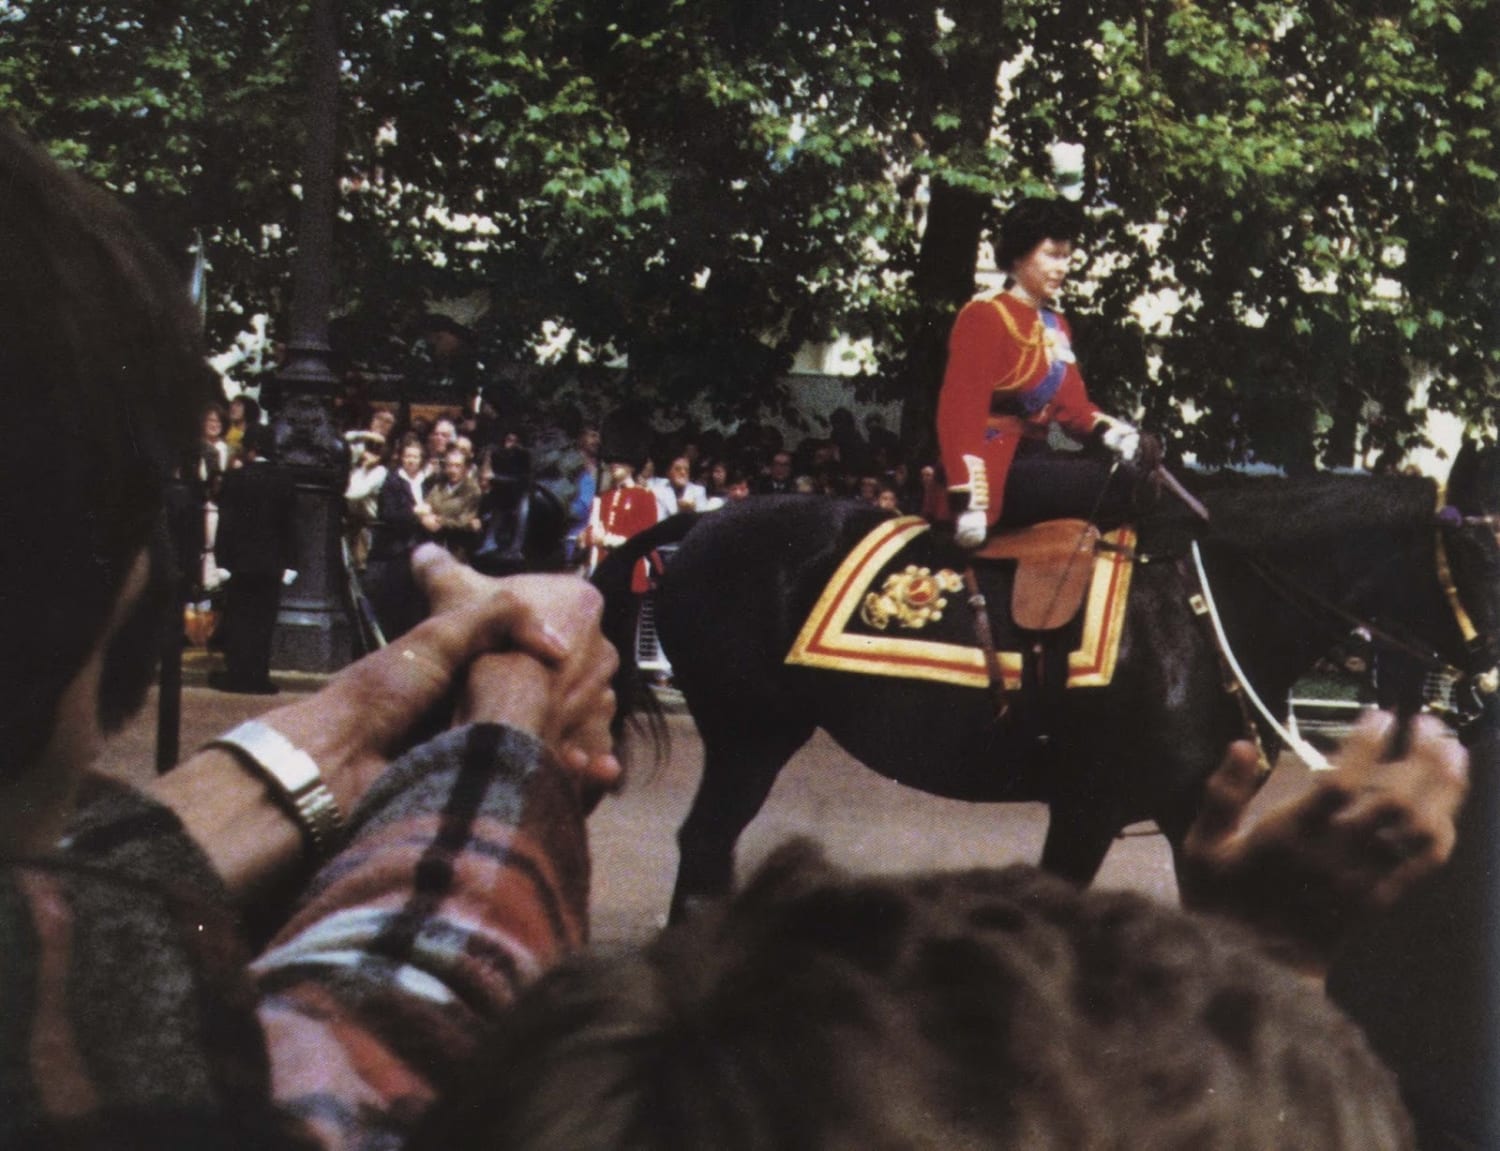 Marcus Sarjeant shooting blanks at Queen Elizabeth II. London, 13 June 1981. Photo taken by George Uebel.